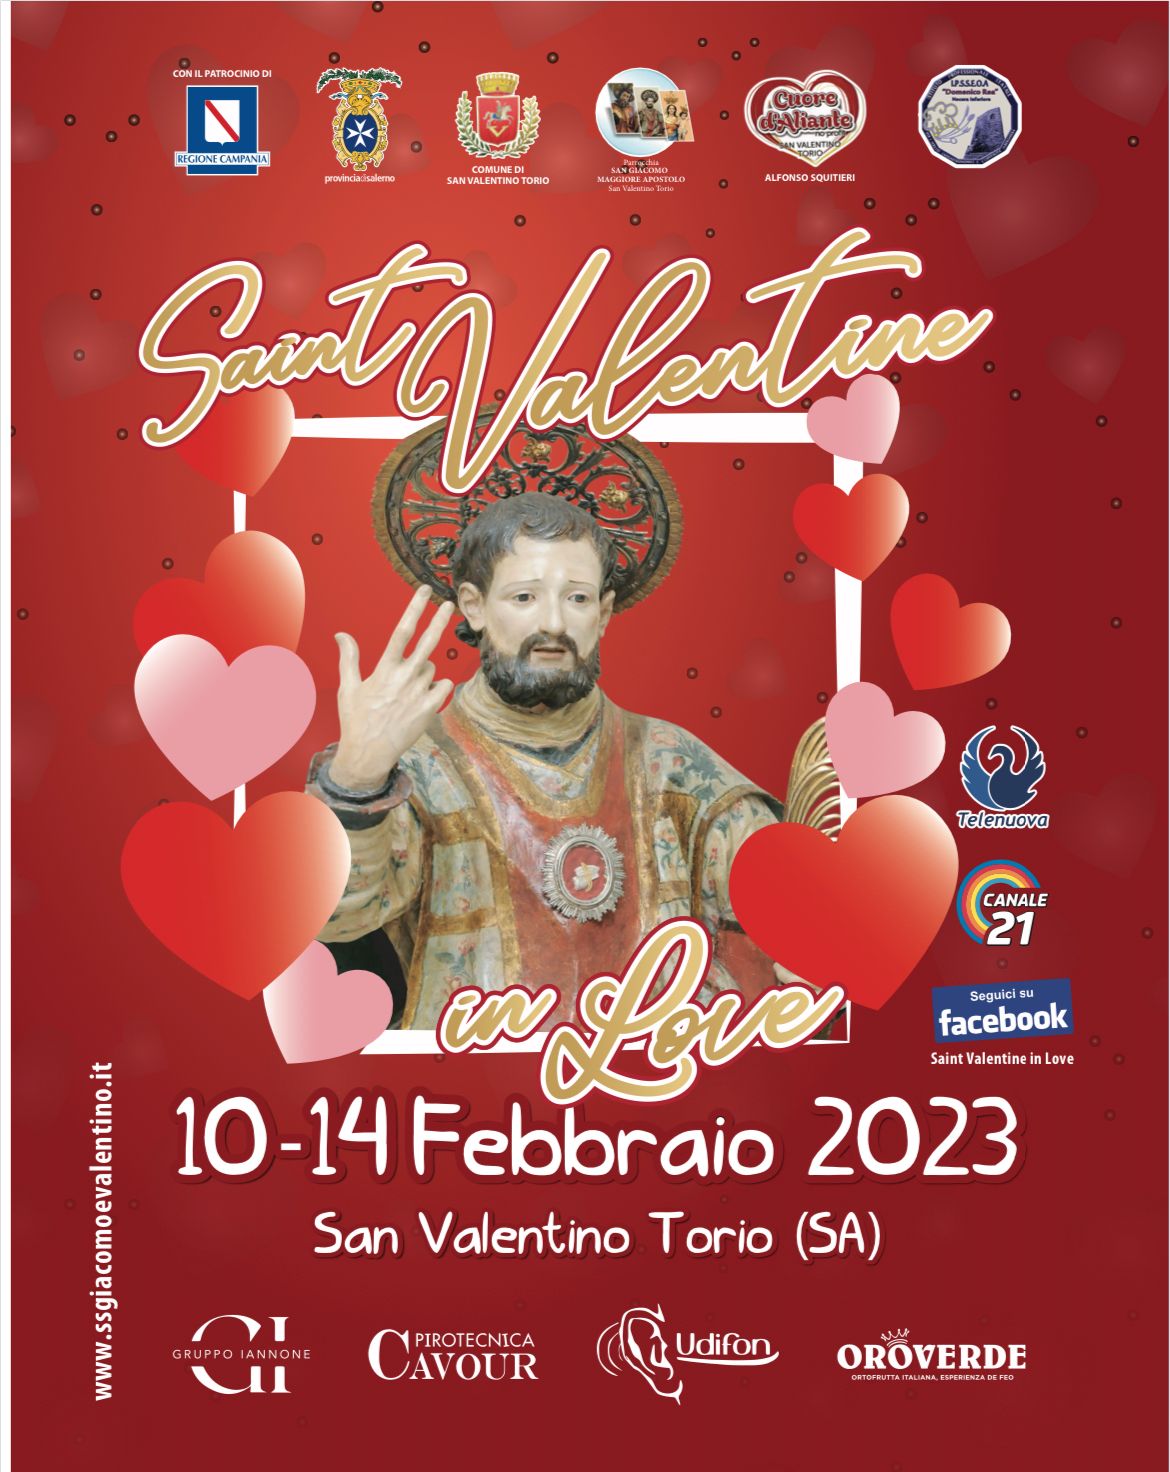 San Valentino Torio: Festa patronale e Saint Valentine in Love